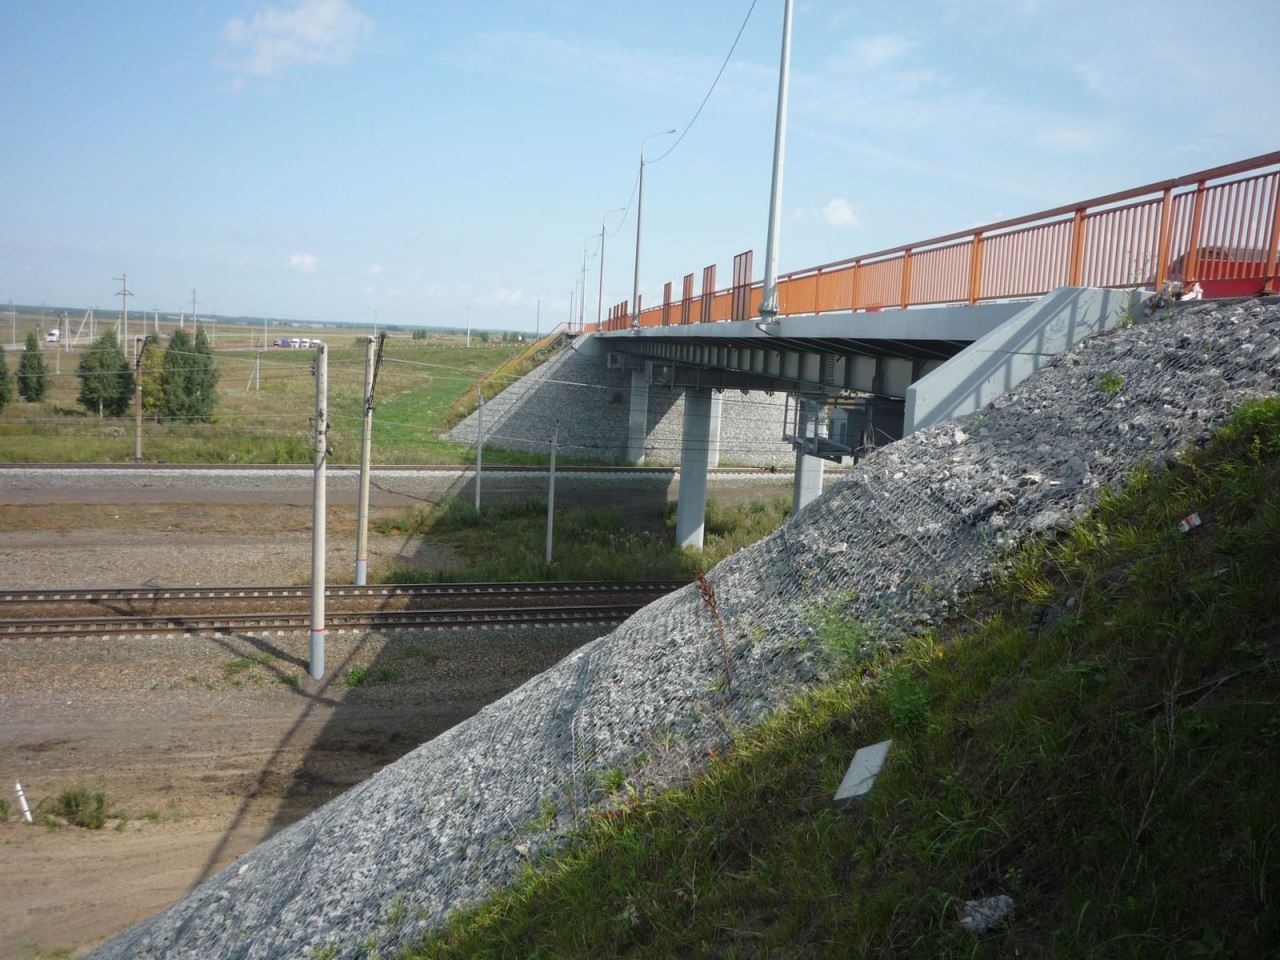 Новый путепровод в Новосибирской области перекрыли из-за дефектов